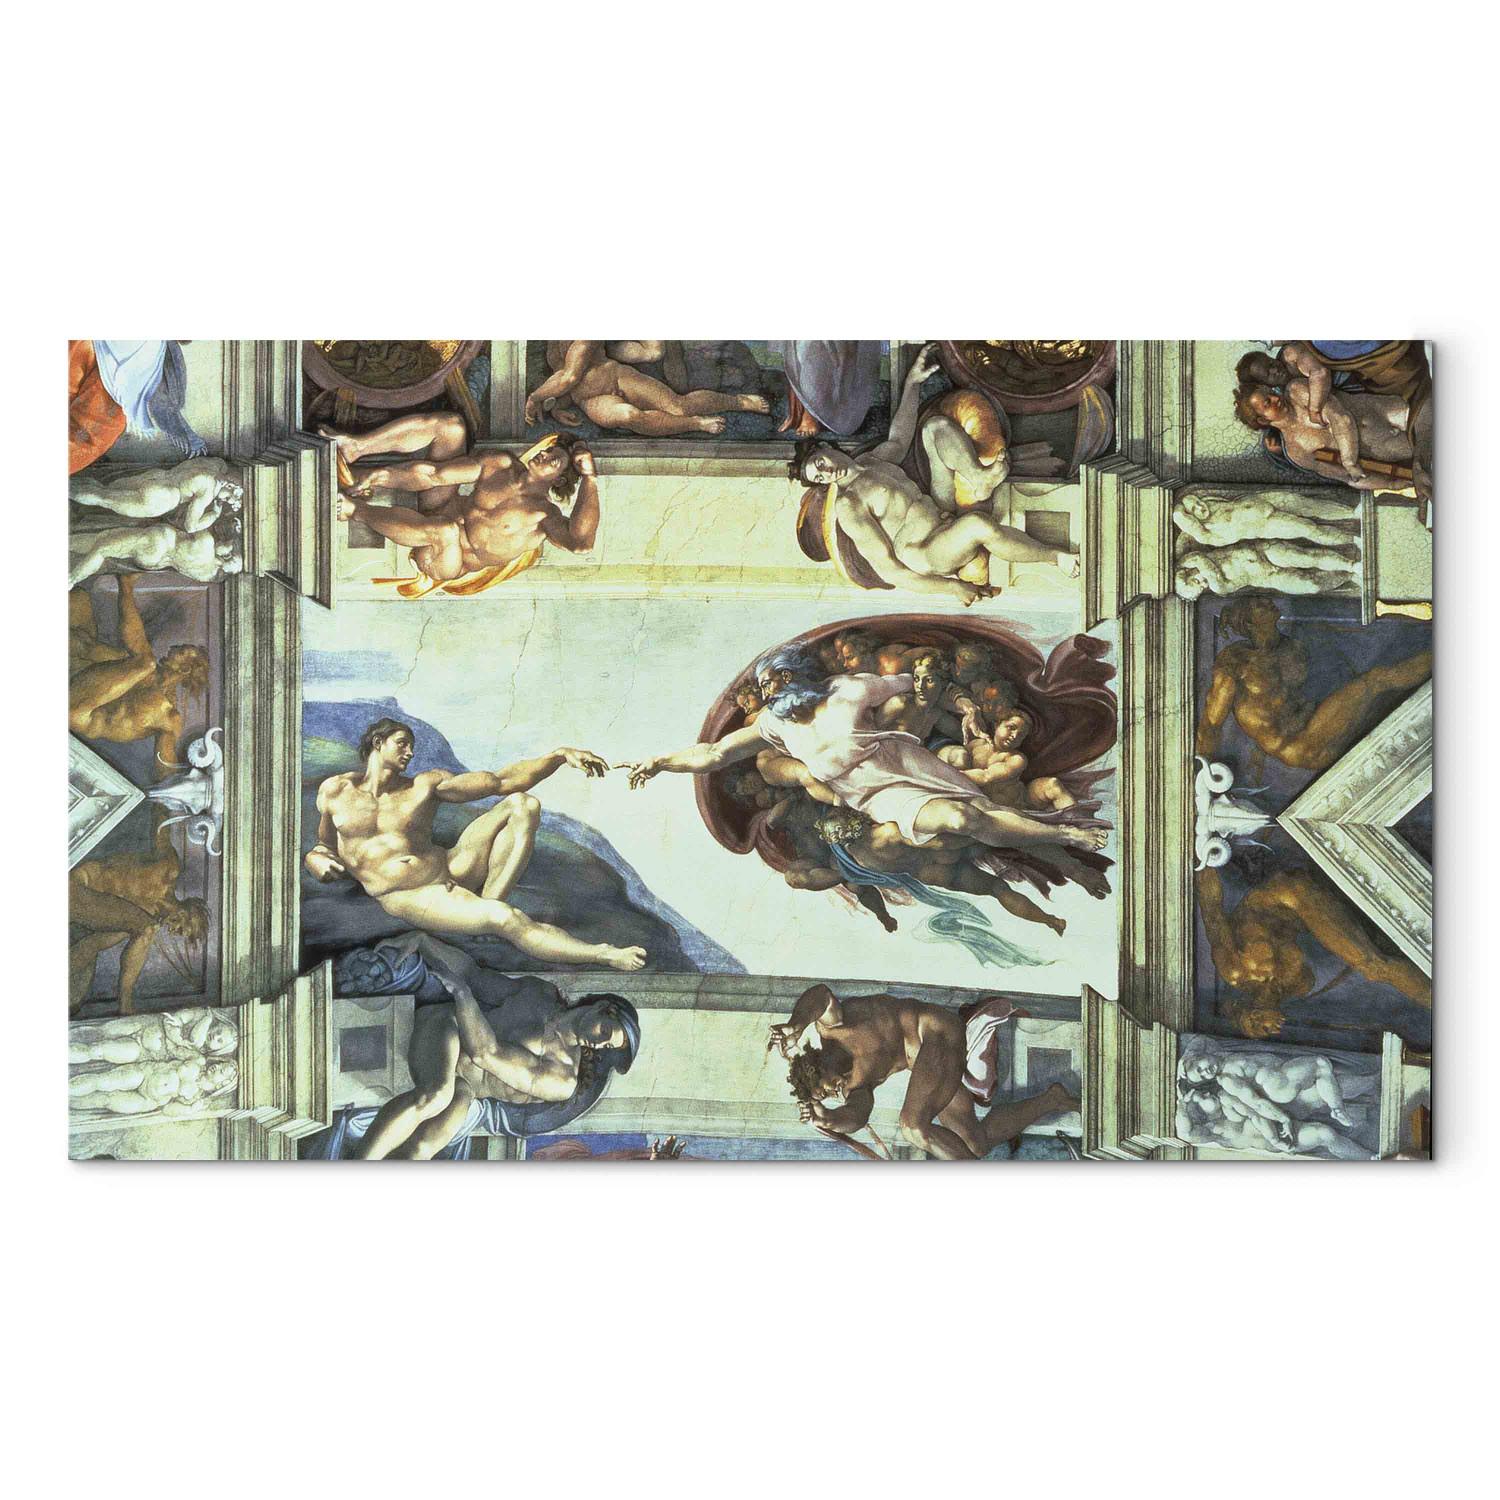 Reproducción Sistine Chapel Ceiling: Creation of Adam